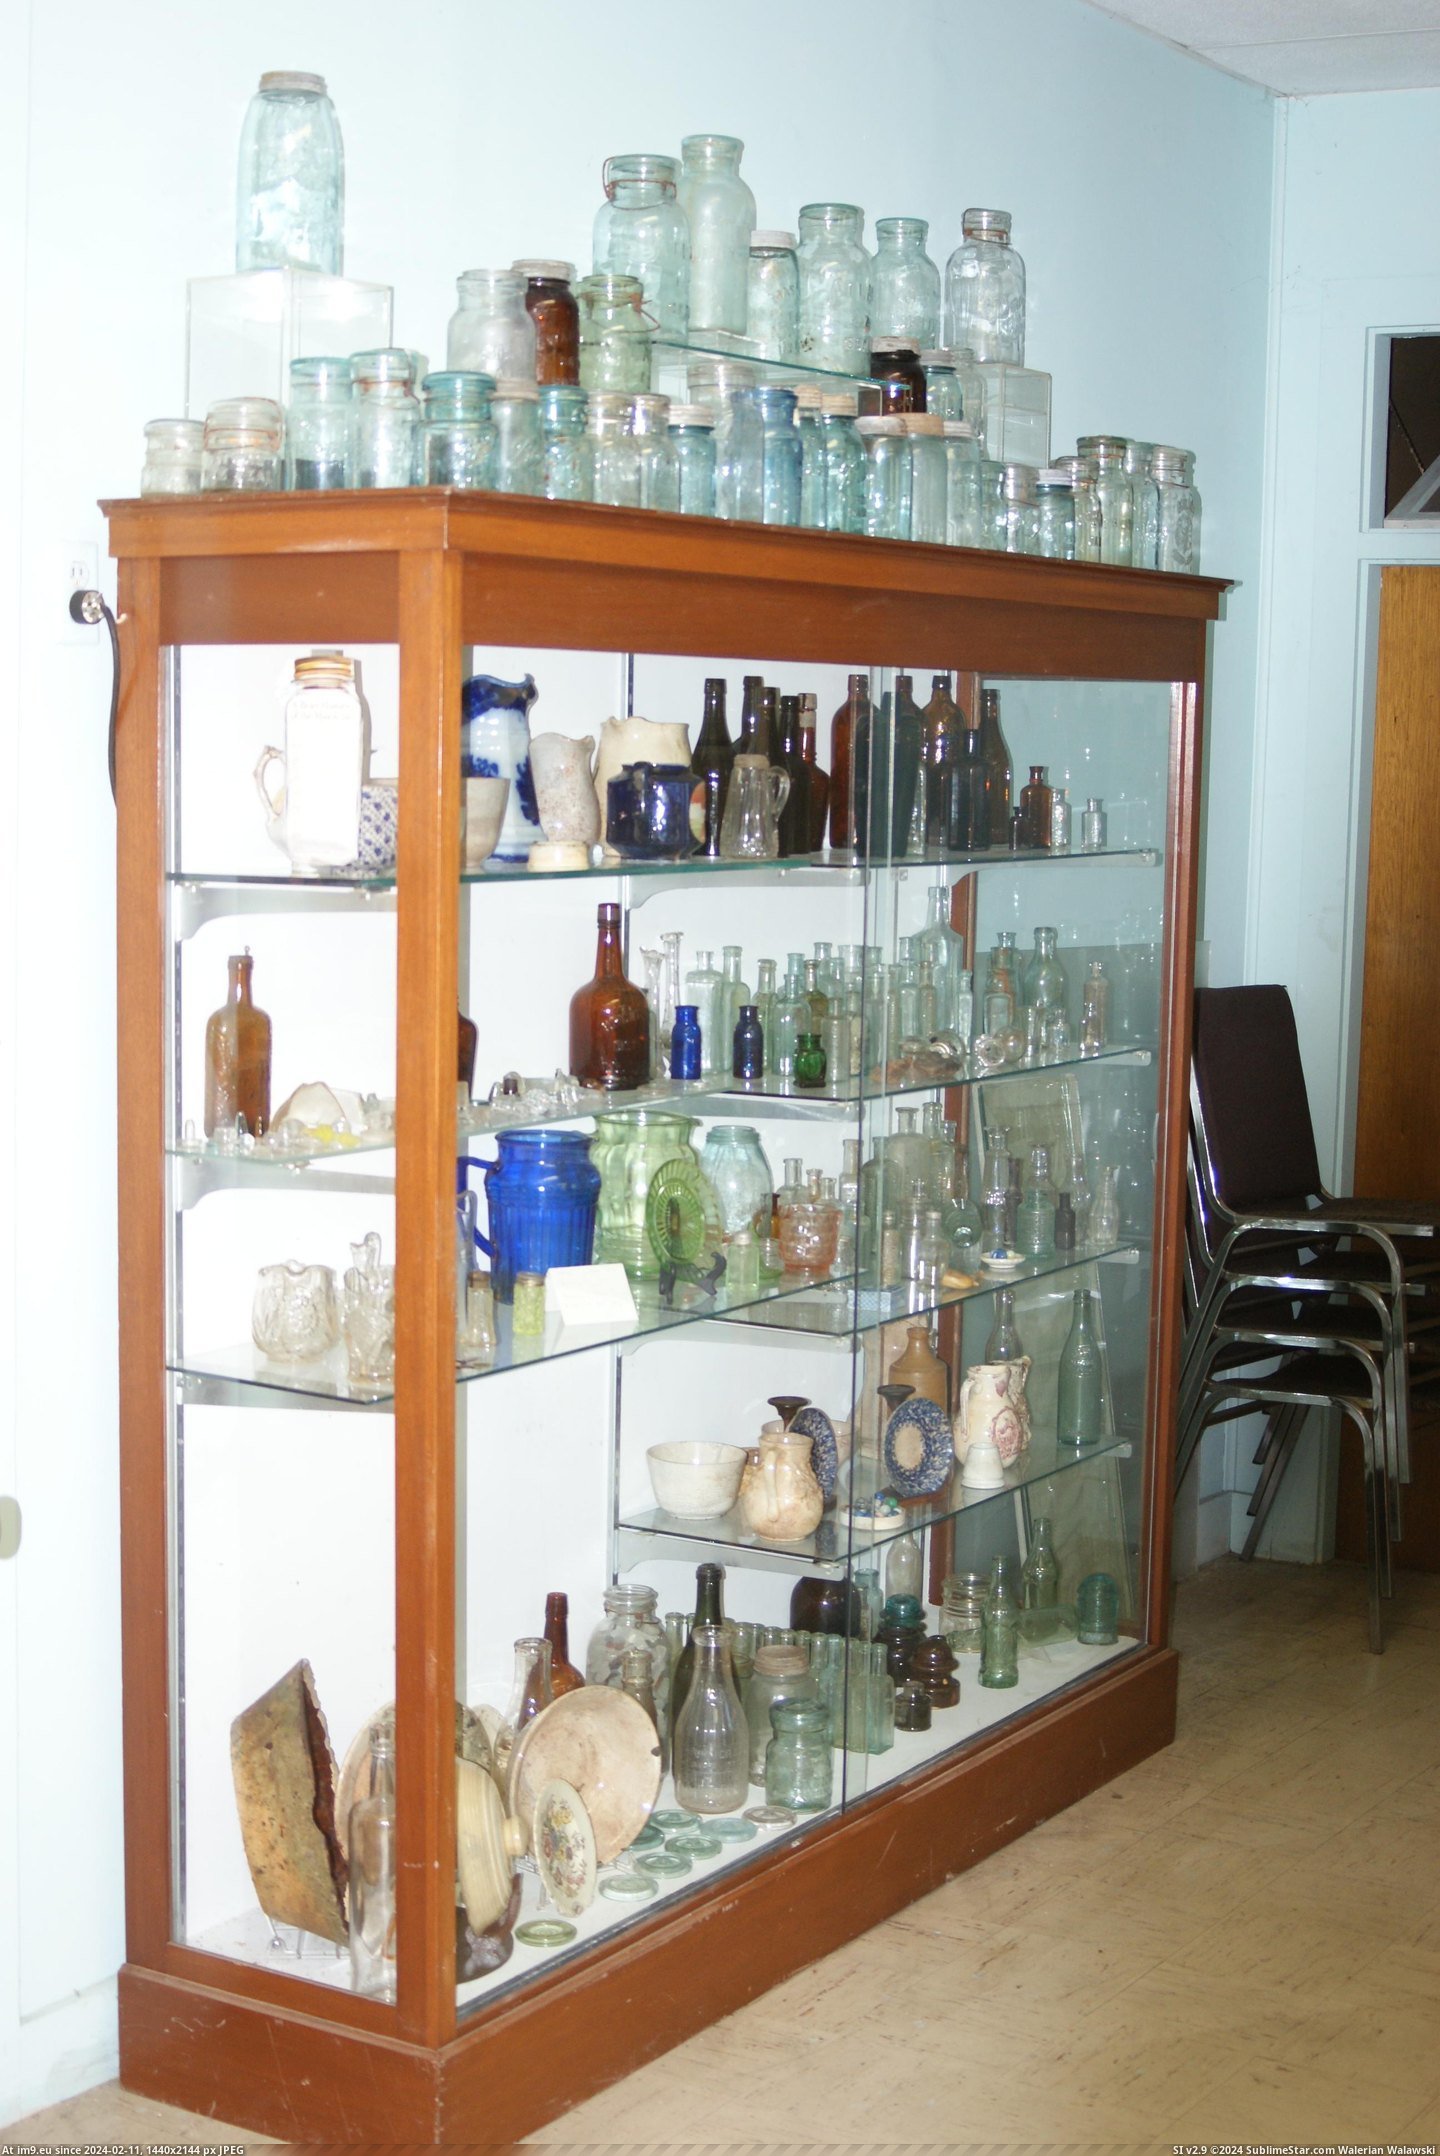 #Museum #Maine #Naples #Bottle MAINE BOTTLE MUSEUM NAPLES (1) Pic. (Obraz z album MAINE BOTTLE MUSEUM))